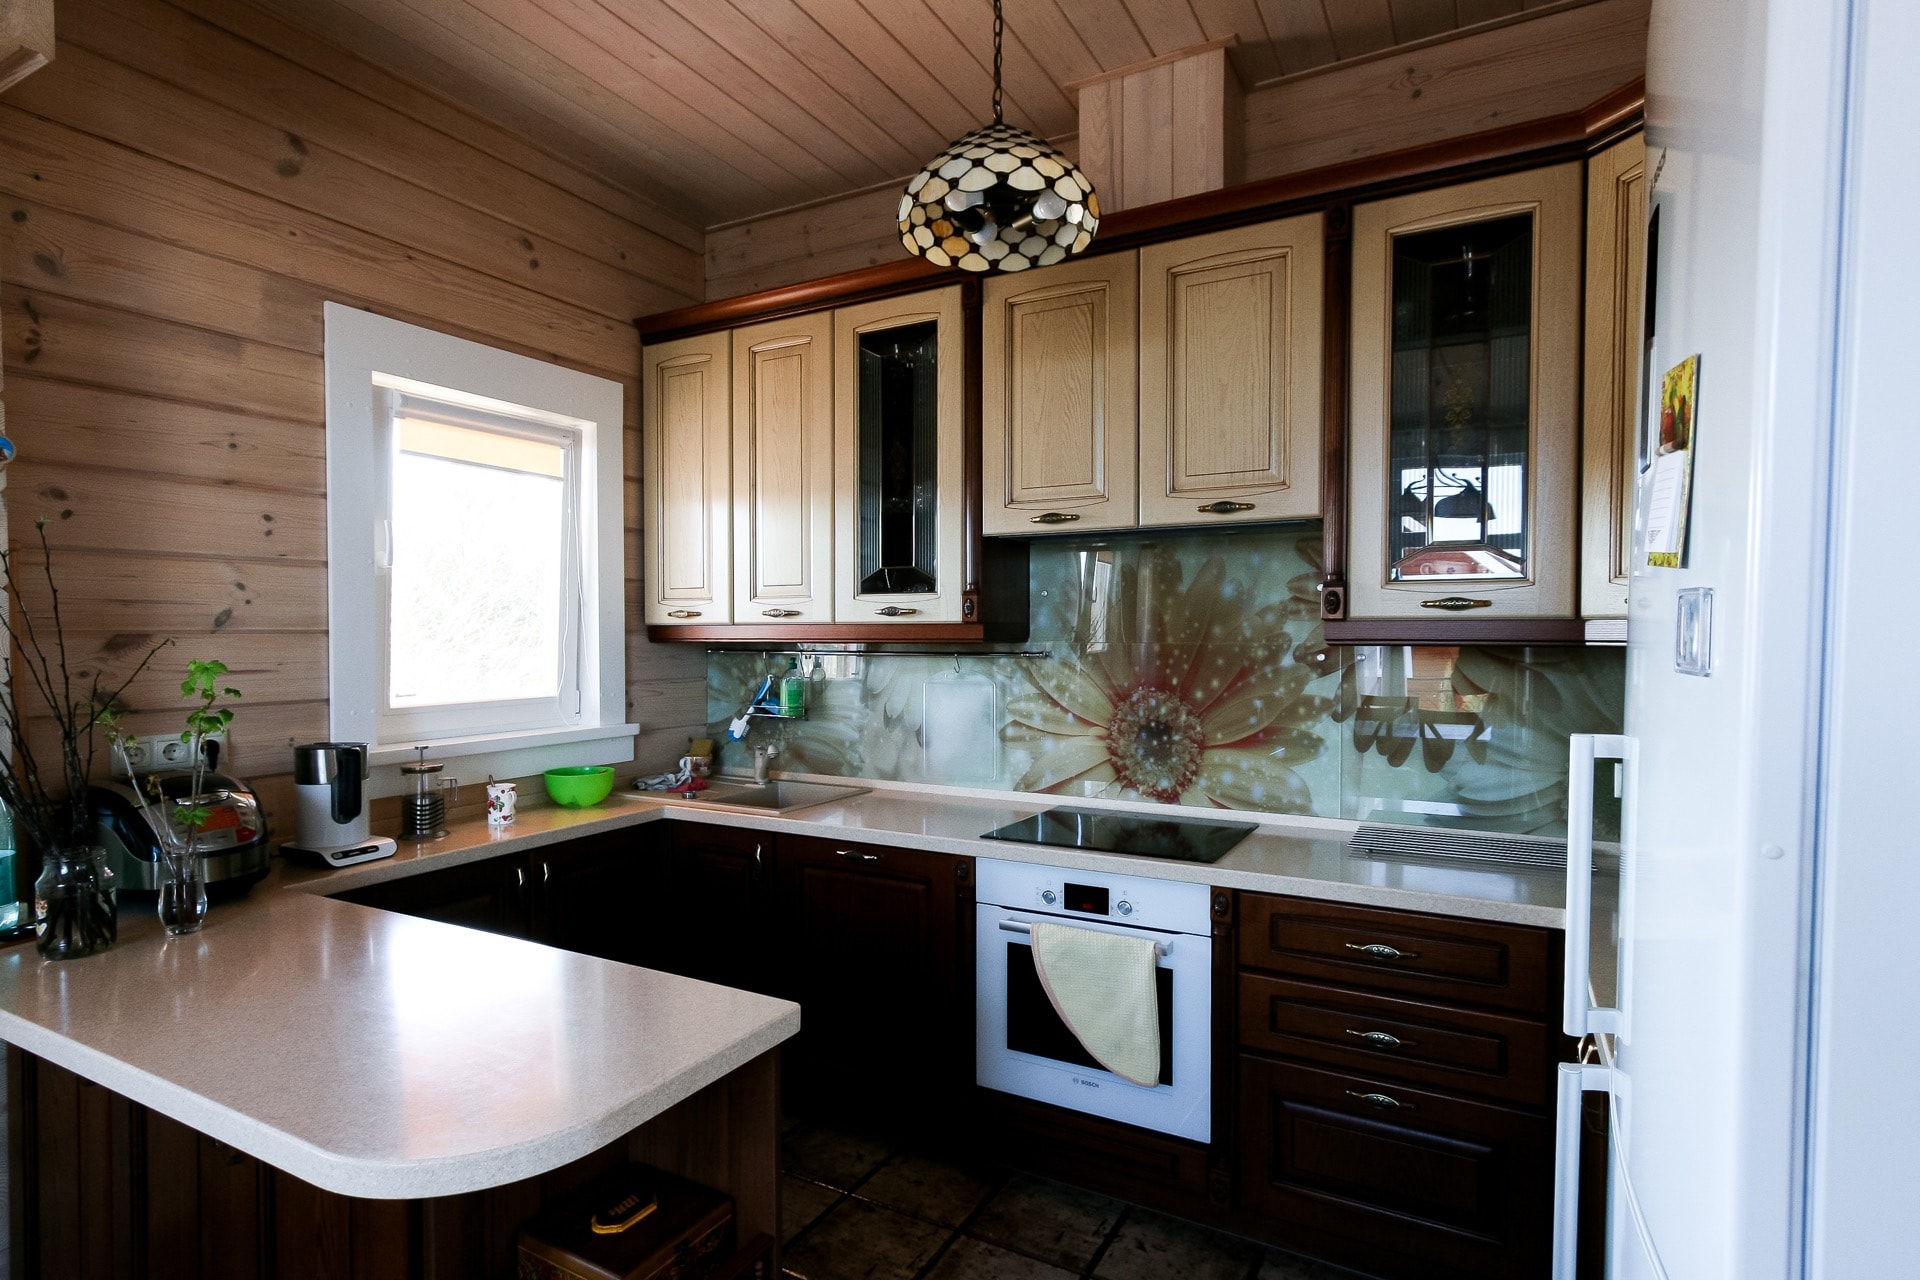 Кухонная зона в деревянном доме из клееного бруса.